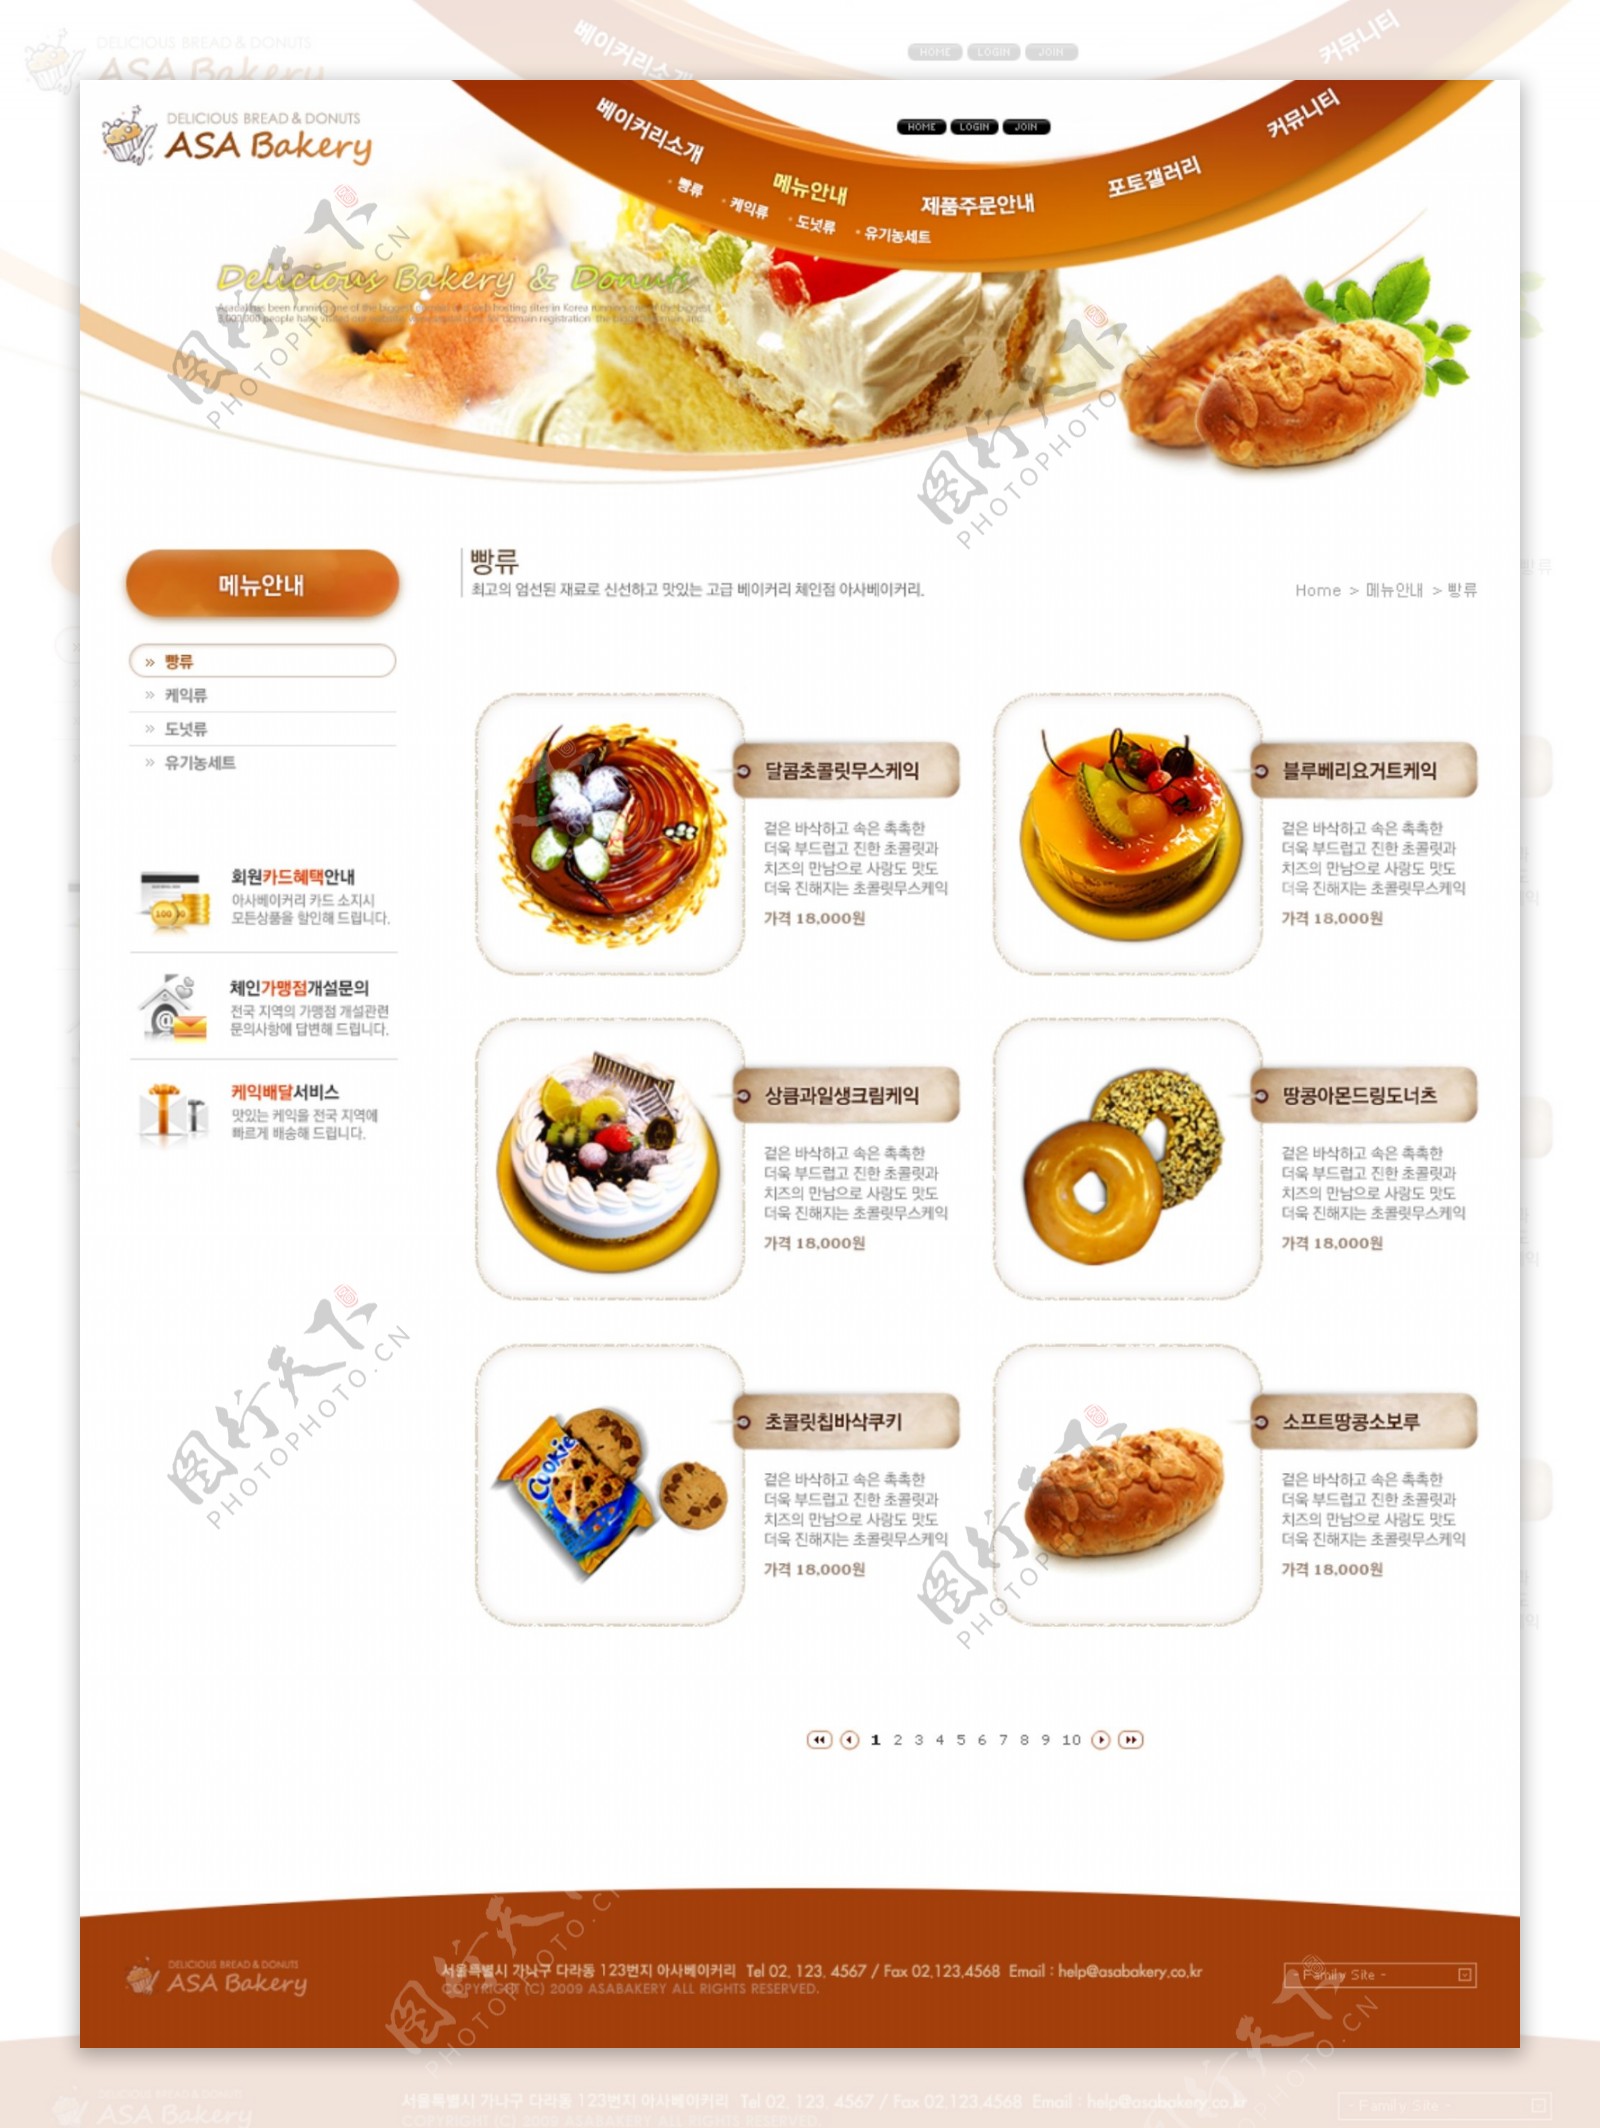 食品橙色网站模版PSD源文件